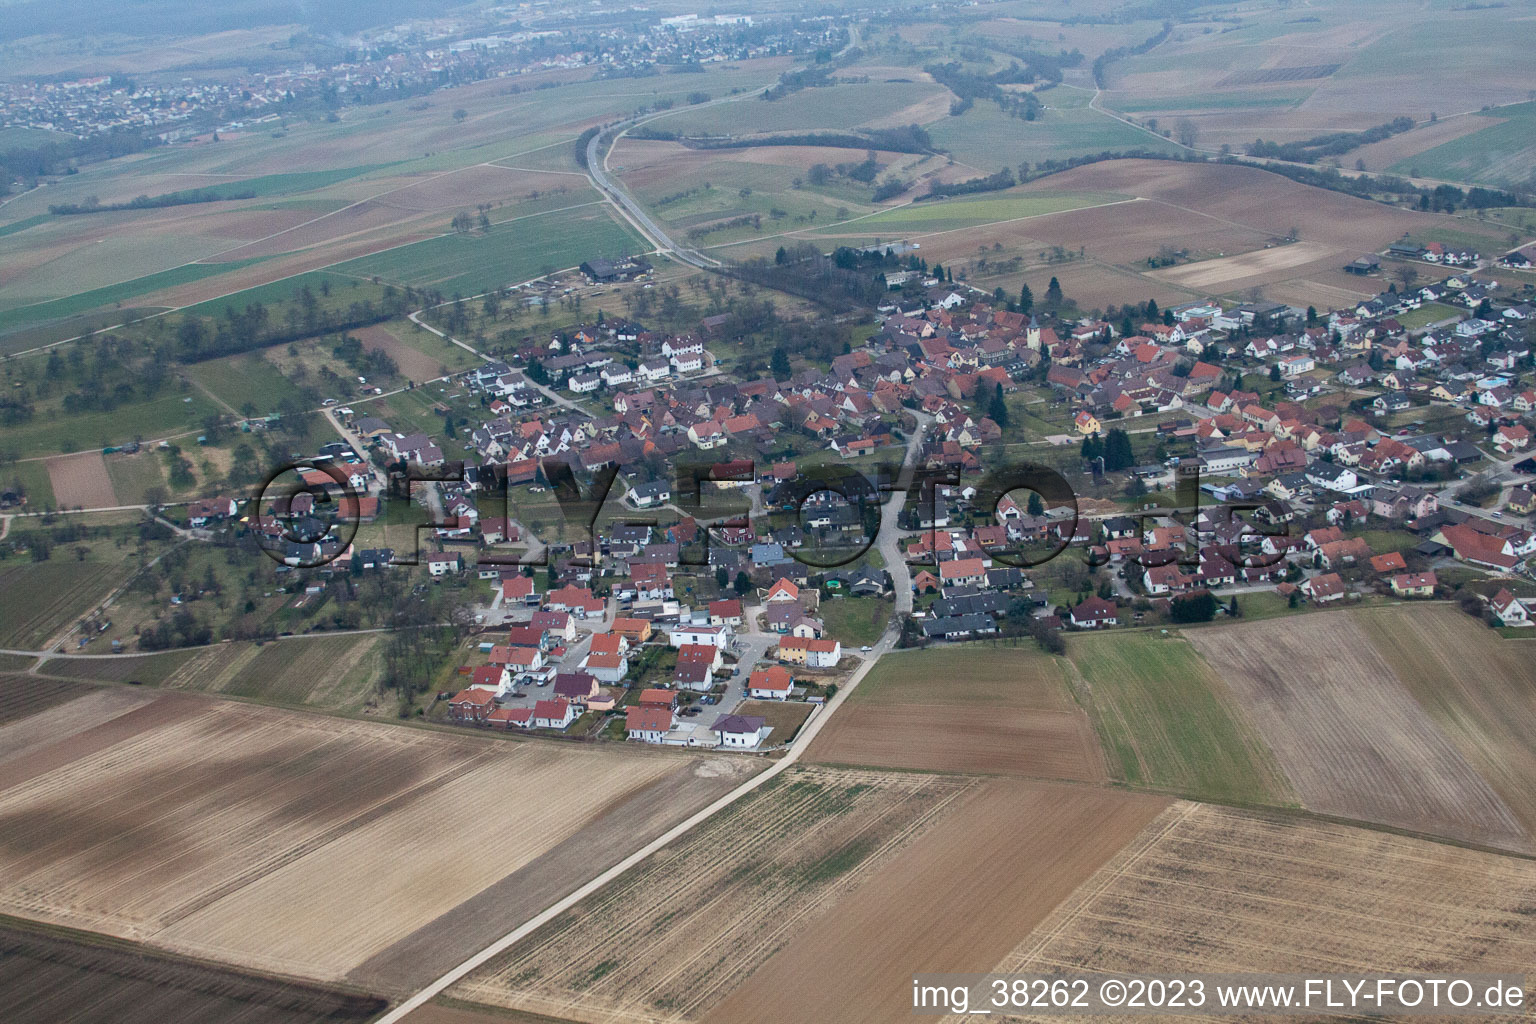 Luftbild von Großvillars im Bundesland Baden-Württemberg, Deutschland